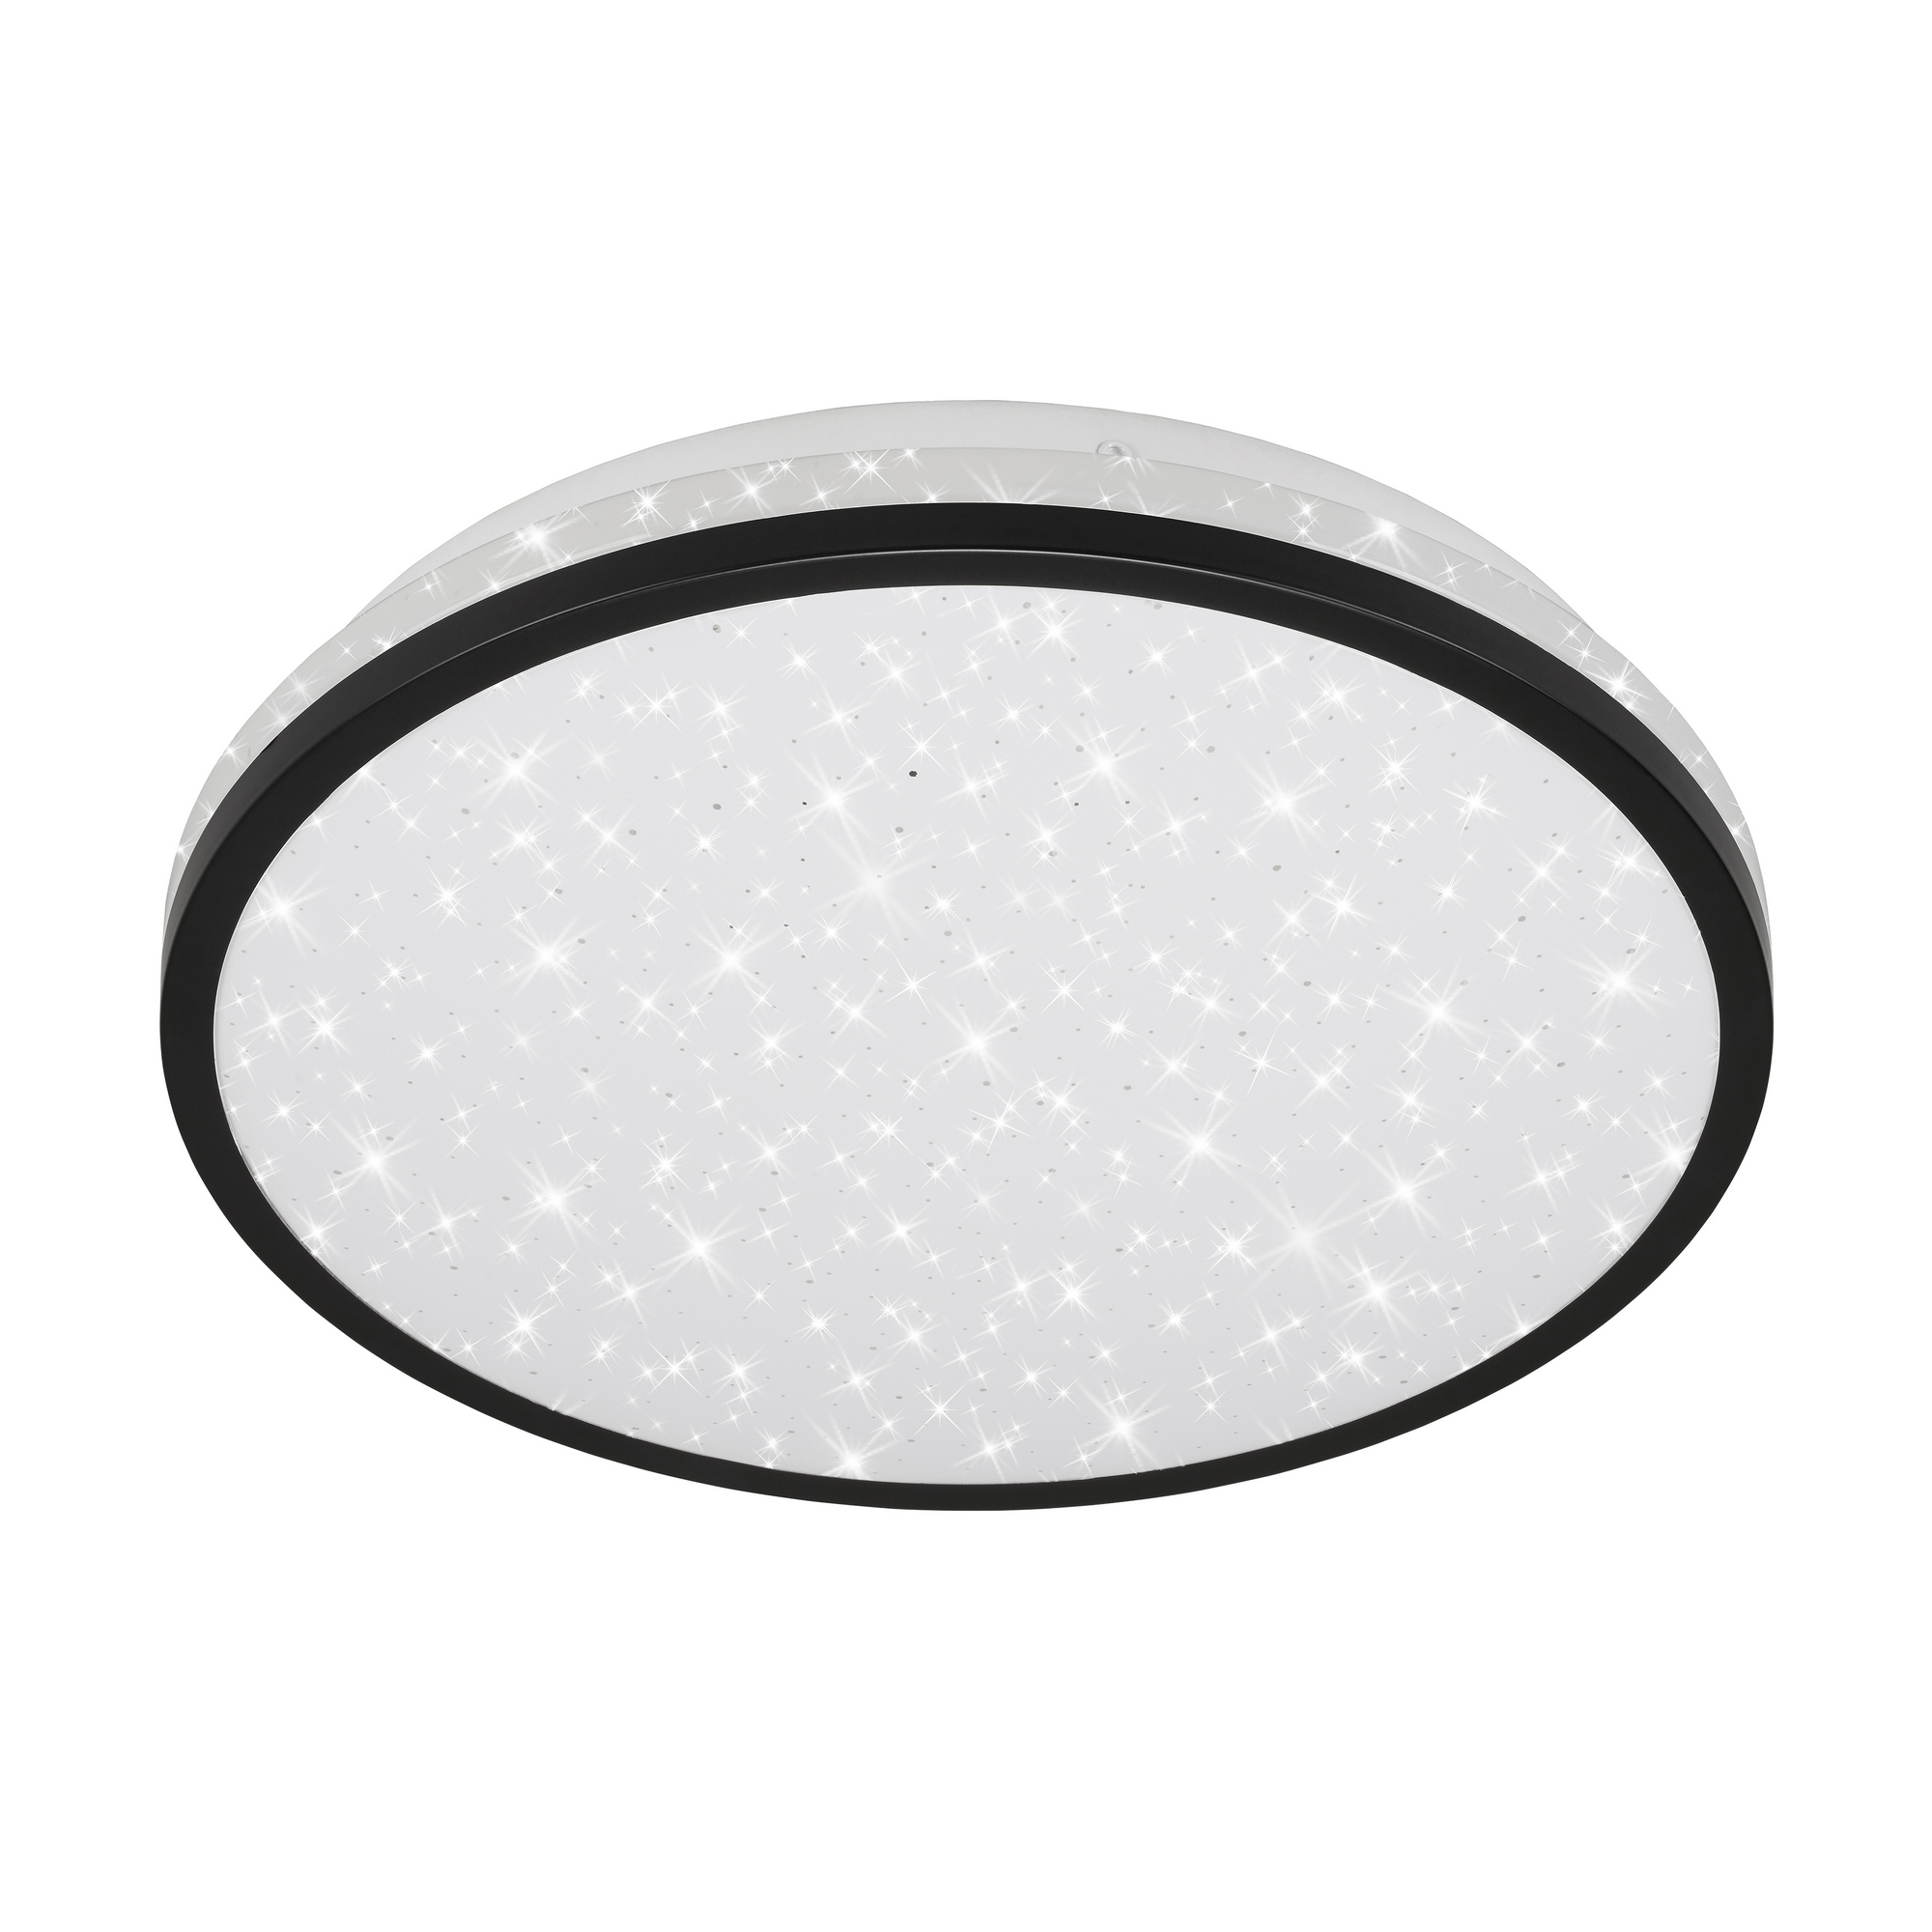 LED-Deckenleuchte 'Acorus' schwarz/weiß Ø 28 x 7 cm 1200 lm, Sternenhimmeleffekt + product picture